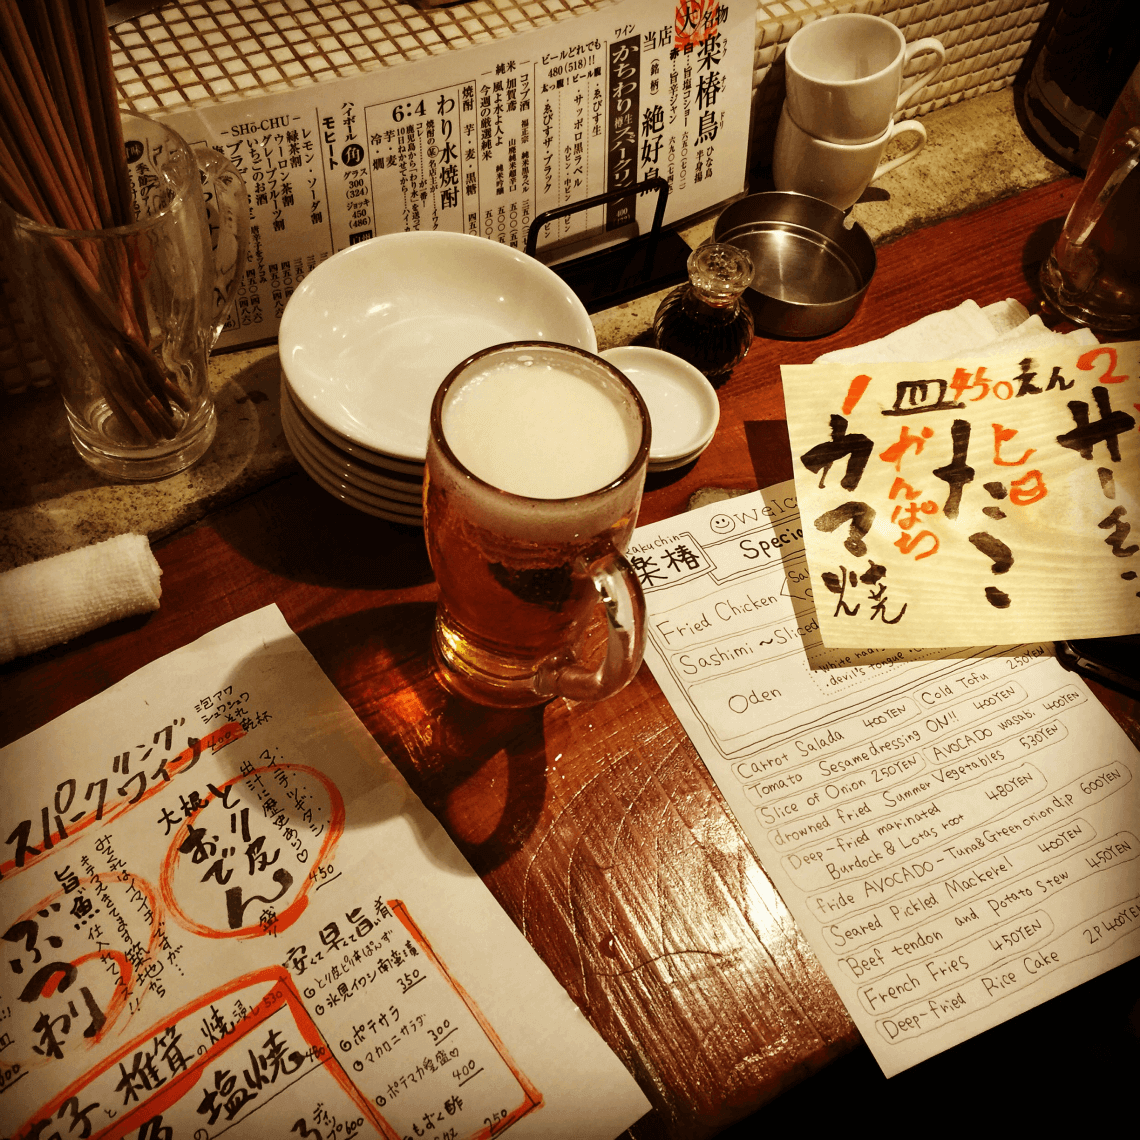 东京涩谷丸山町的日本居酒屋